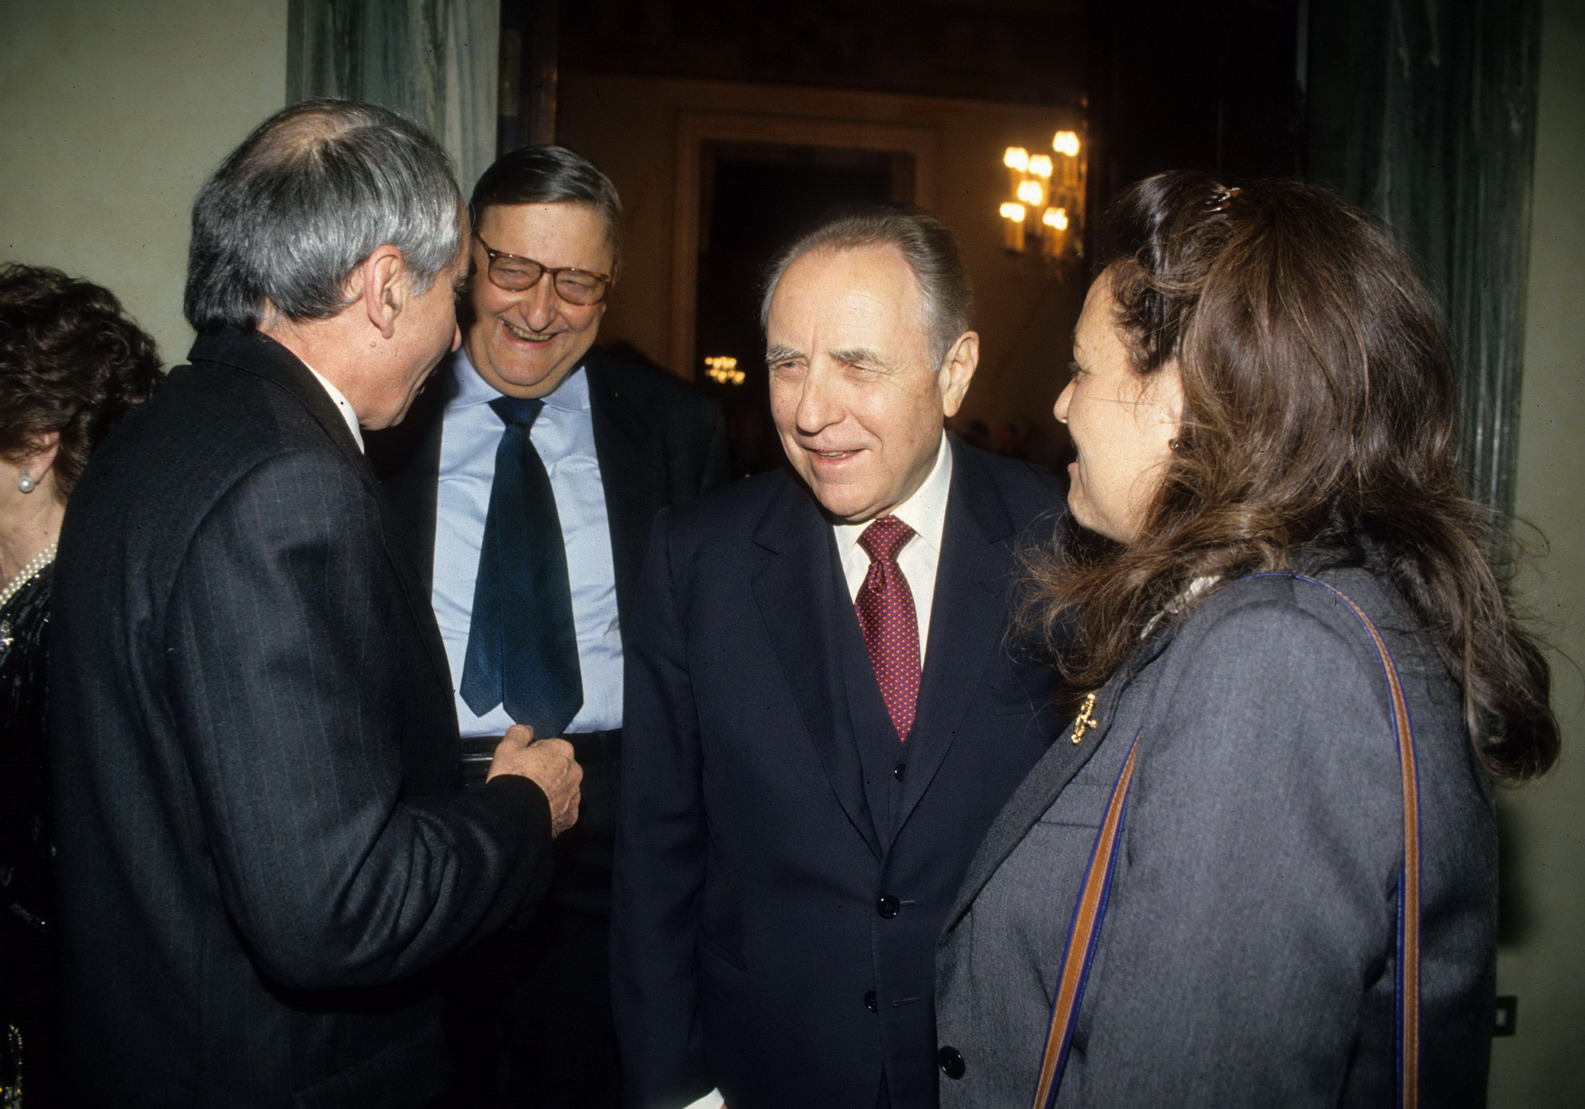 Giuliano Amato, Nino Andreatta, Carlo Azeglio Ciampi, Fiorella Kostoris Padoa Schioppa (1989)